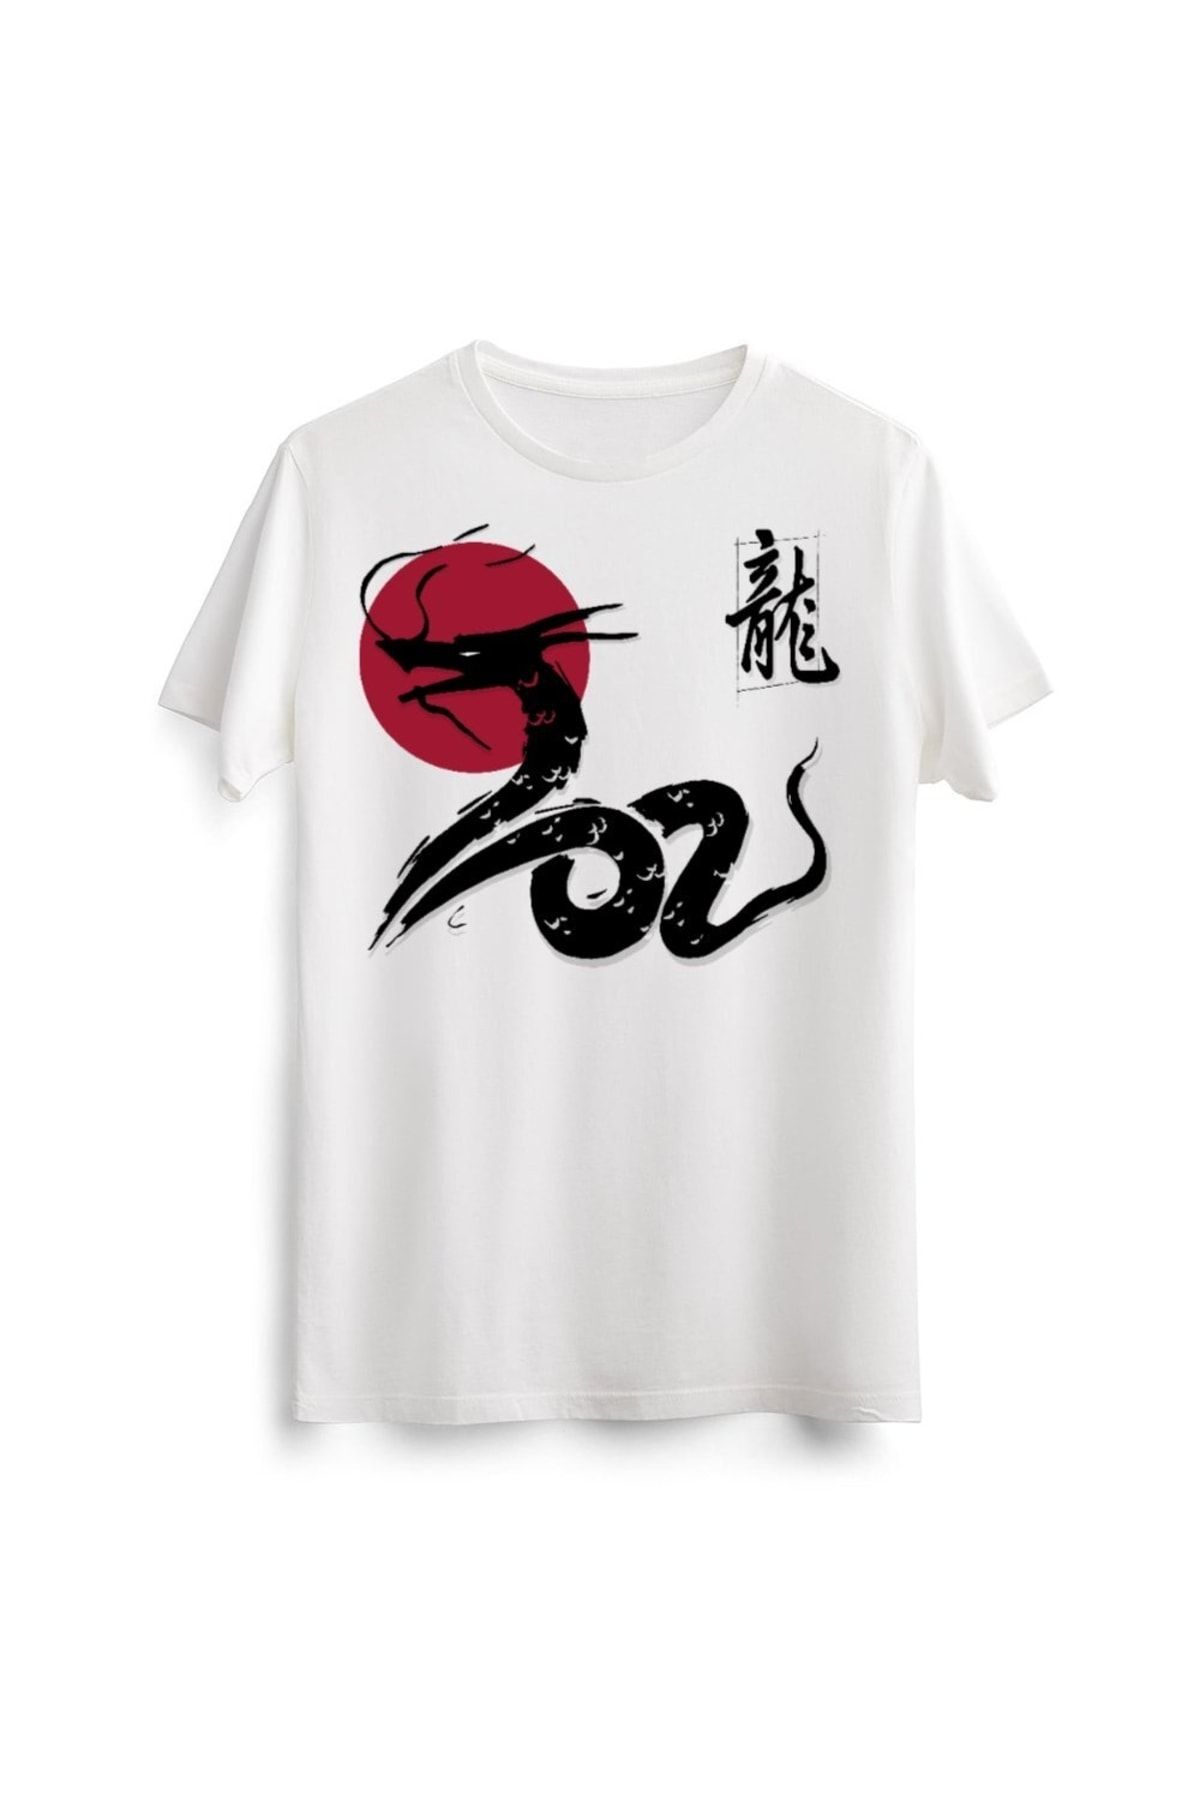 Line Art Cafe Unisex Erkek Kadın Japanese Japon Dragon Snake Yılan Baskılı Tasarım Beyaz Tişört Tshirt T-shirt